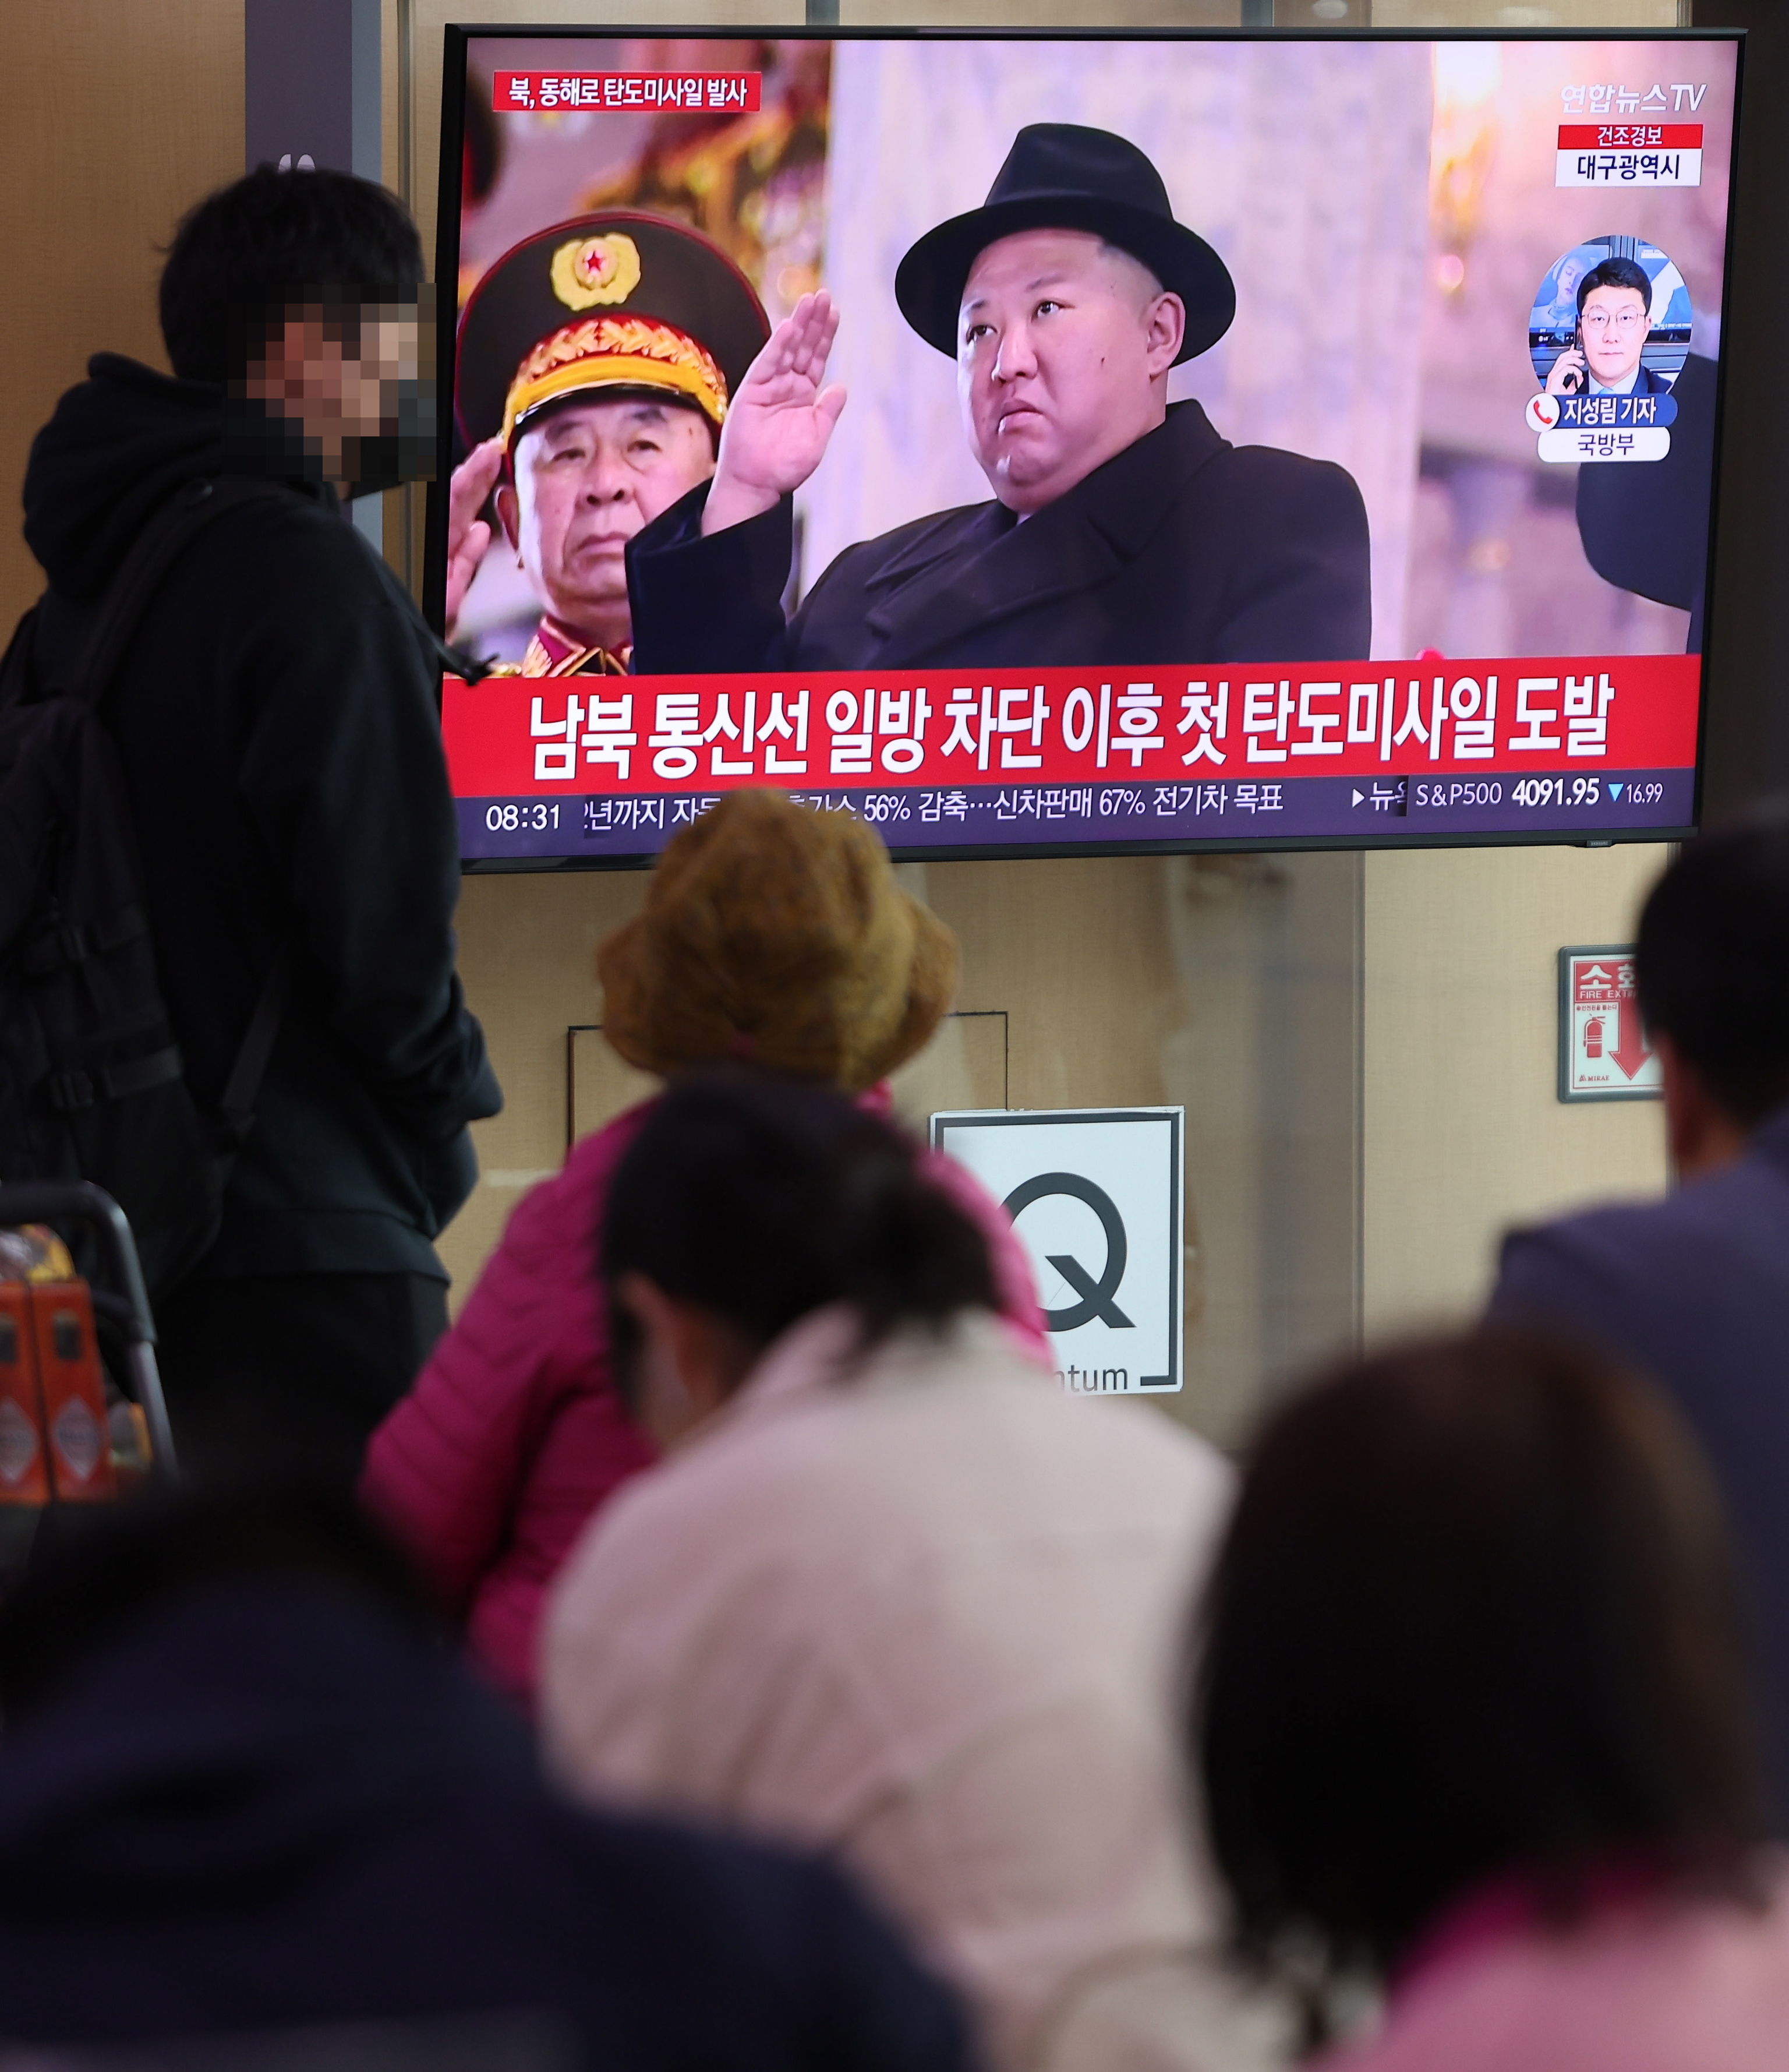 No pretencioso debate retorta Corea del Norte - Noticias de Corea del Norte | EL MUNDO